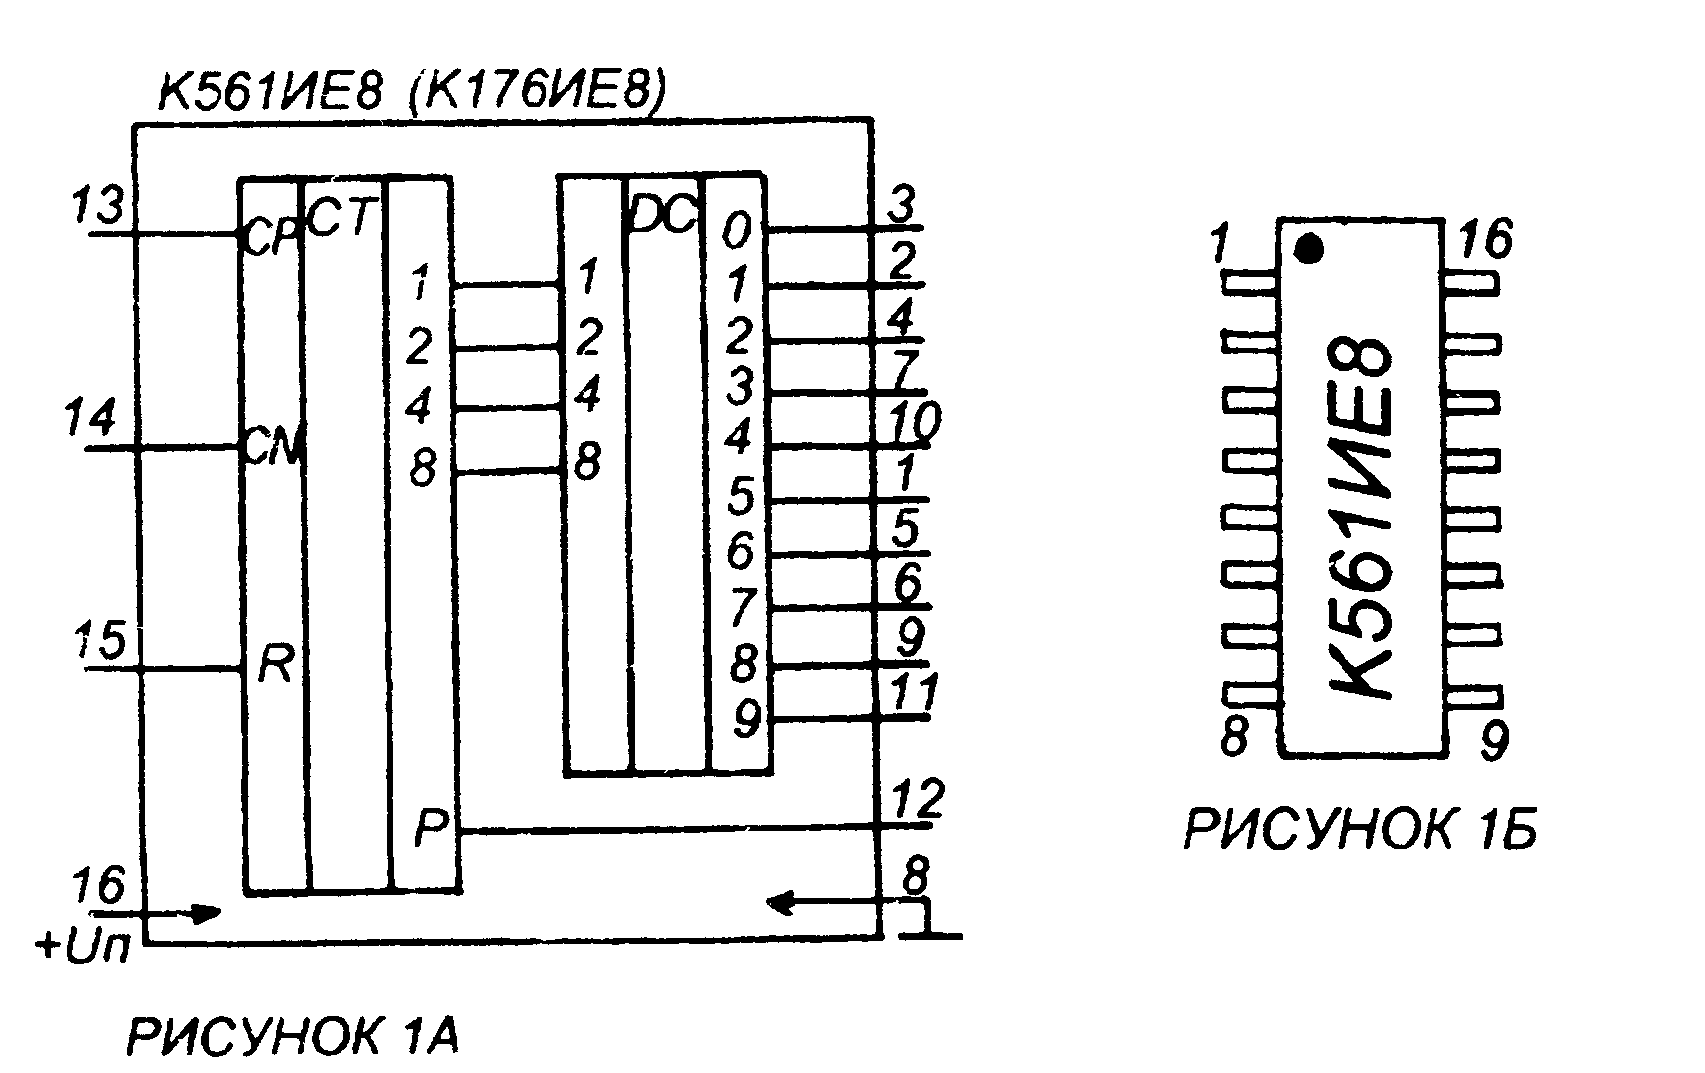 Микросхема к561ие8. описание